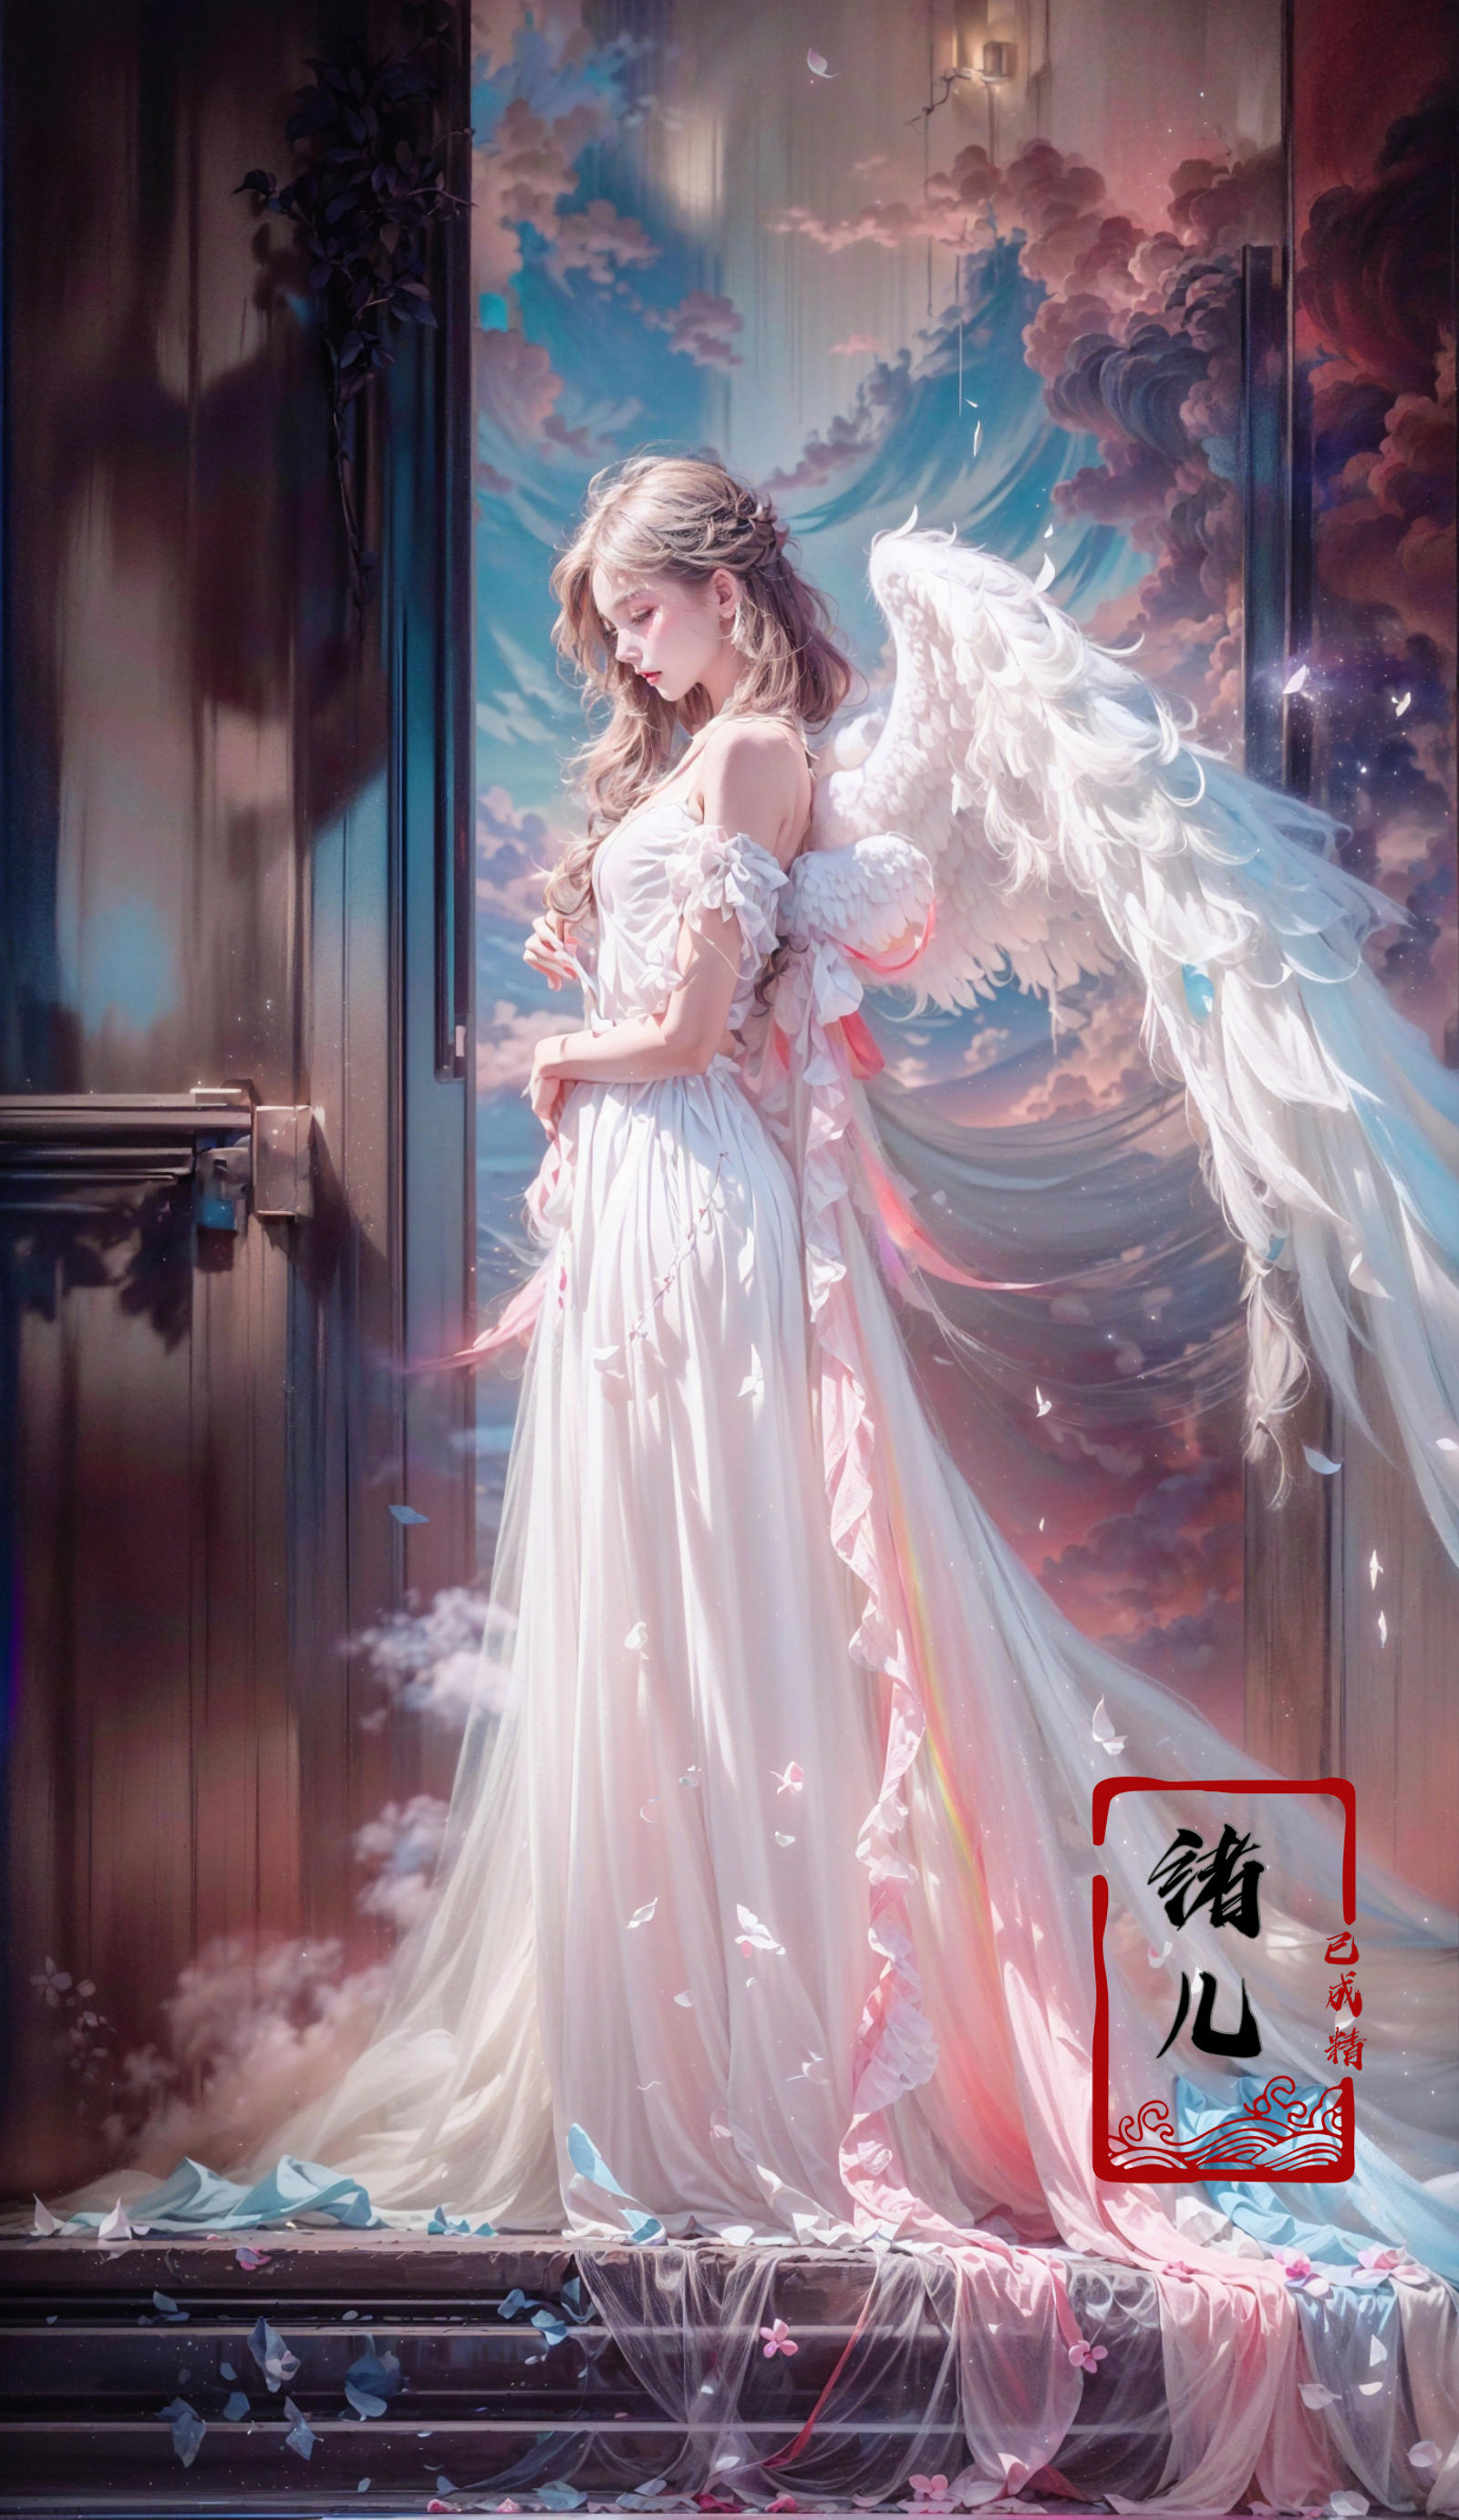 绪儿-绝美彩虹天使 beautiful rainbow angel image by XRYCJ